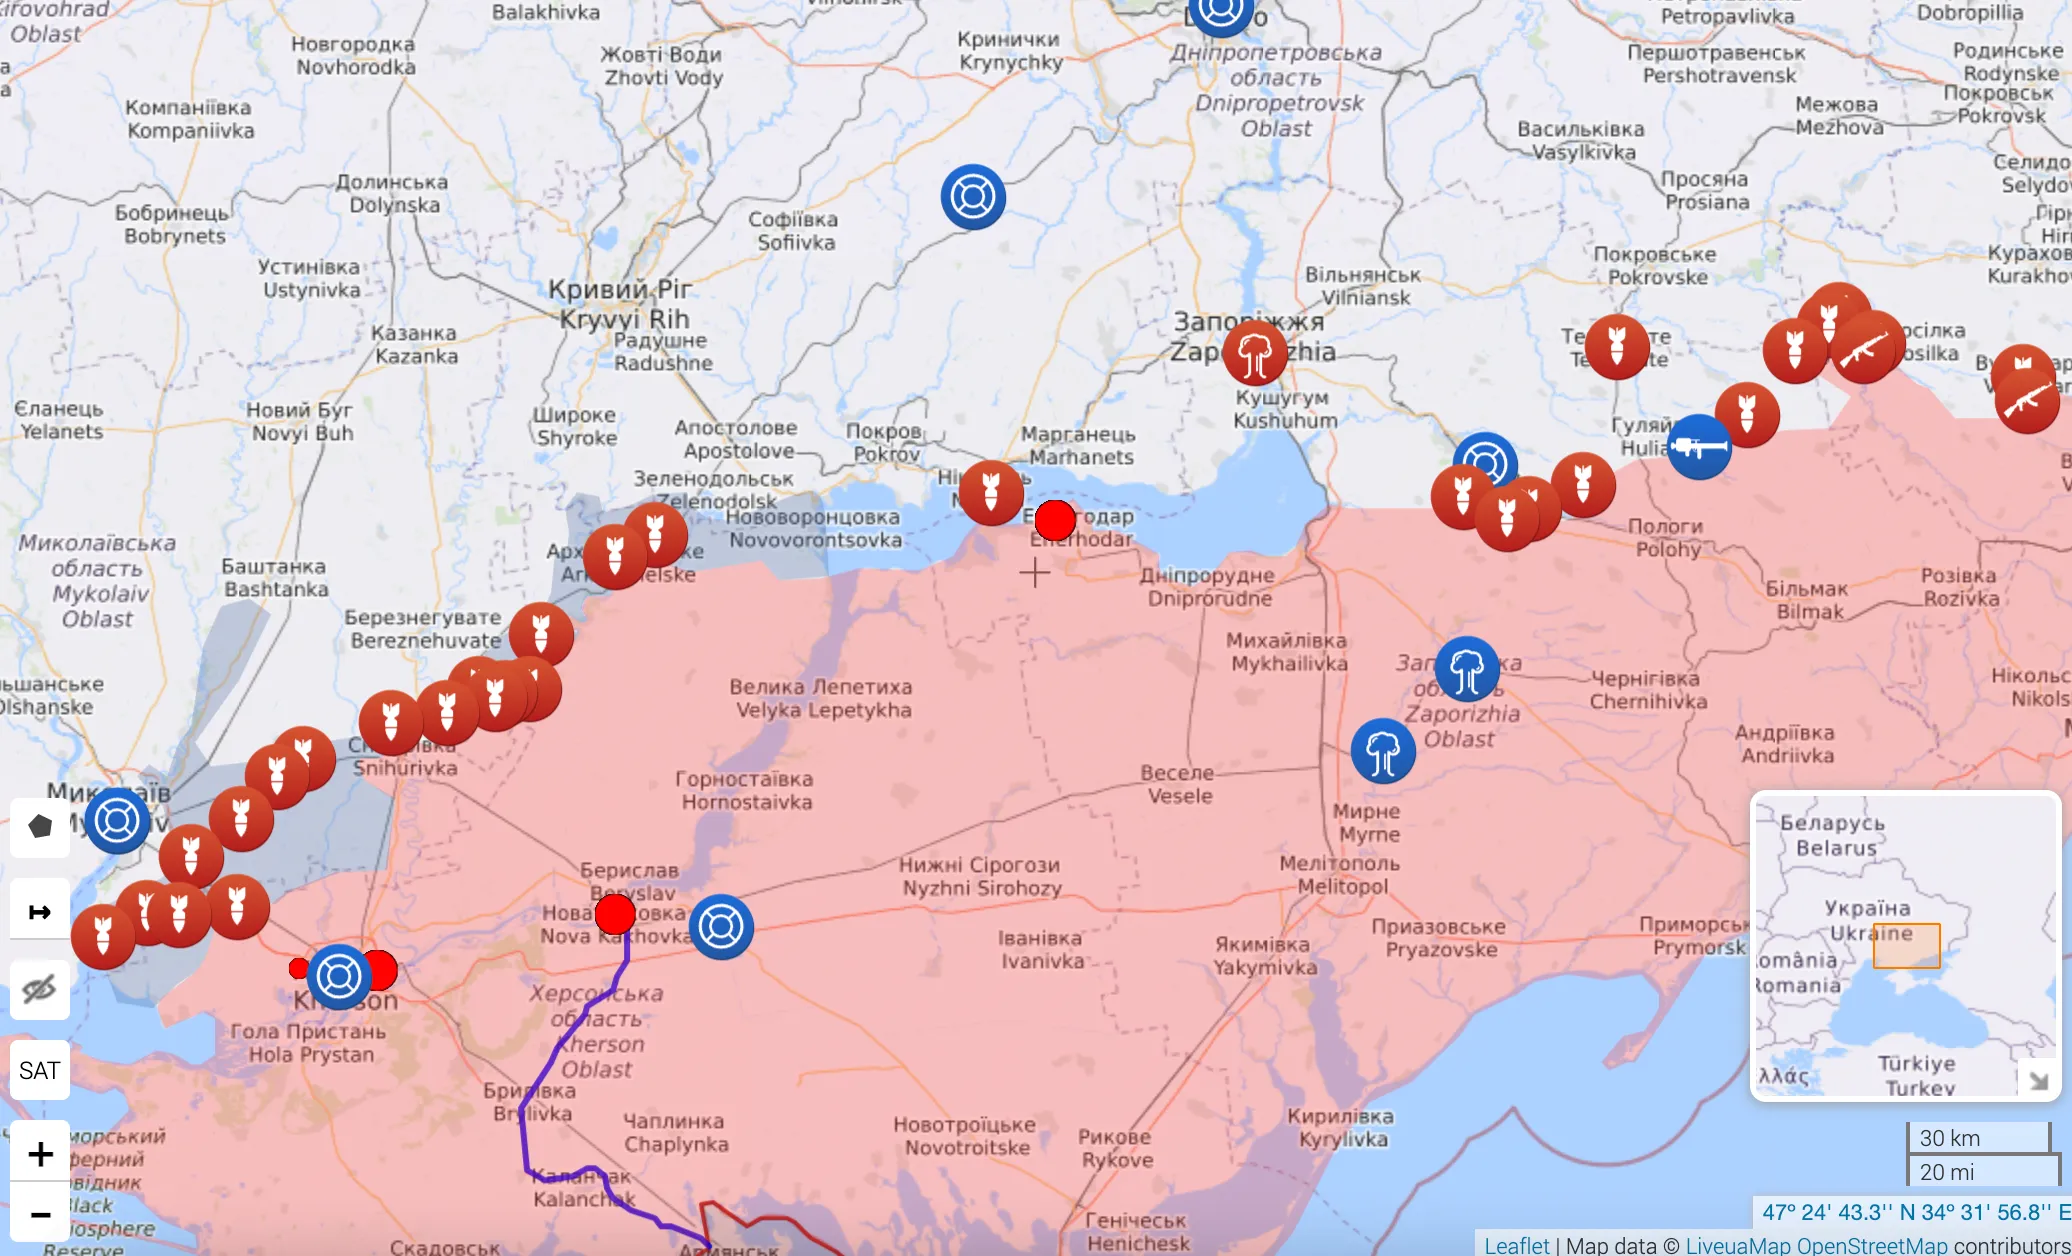 Ситуация на фронте на юге Украины